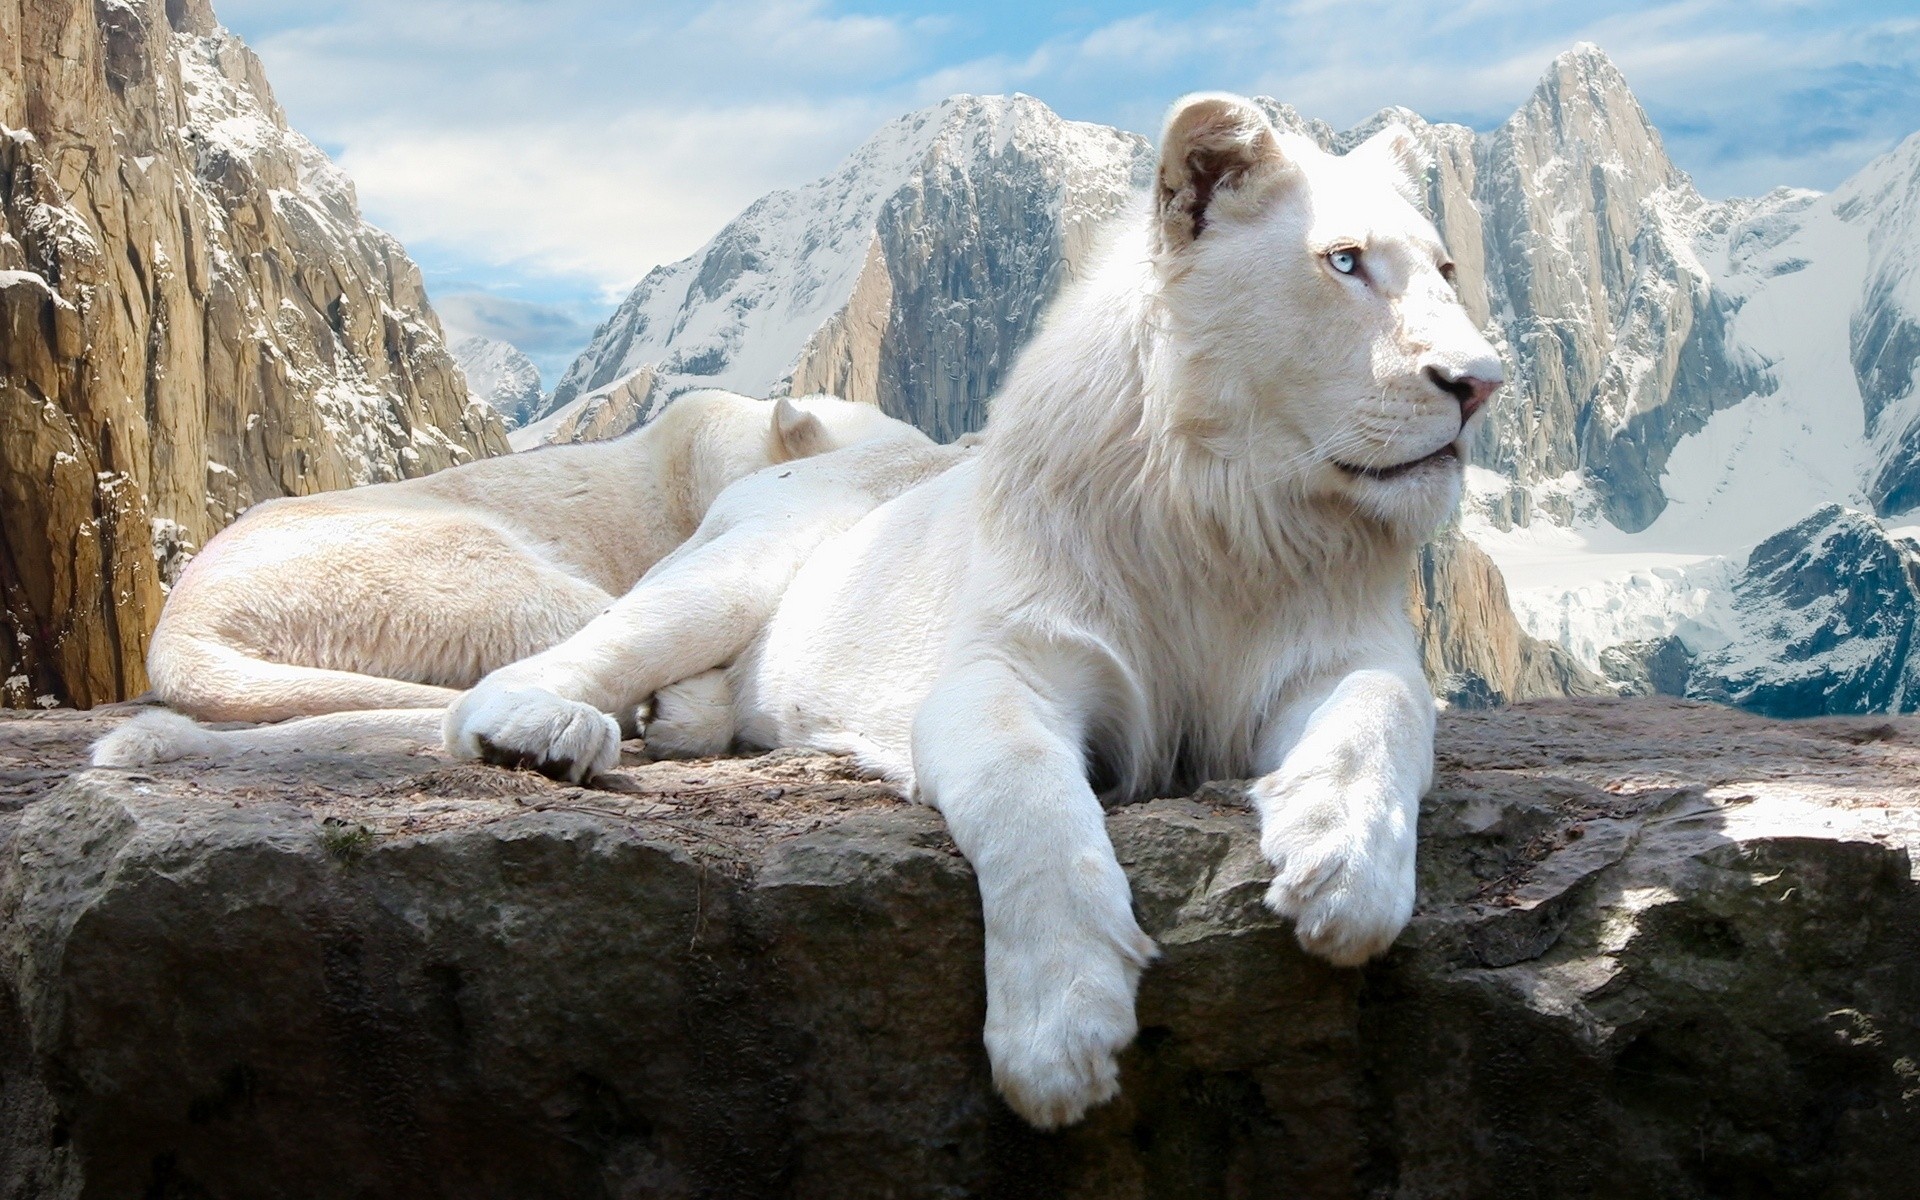 animals nature snow rock outdoors travel mountain wild frosty mammal white lion lion